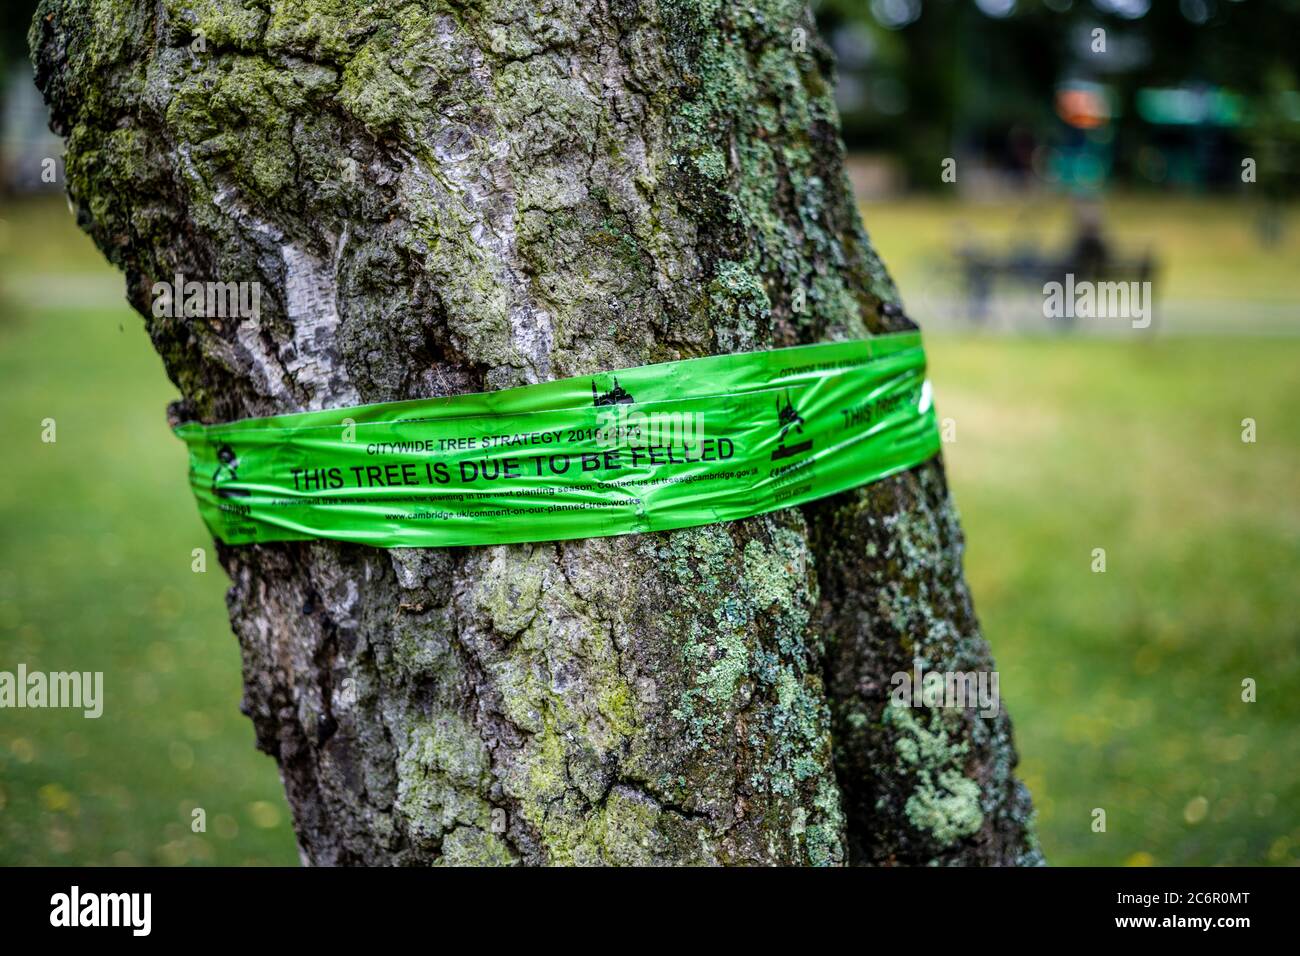 Albero da sgusciare. Notate band su un albero da sfondare come parte di una politica di albero a livello di città a Cambridge UK. Questo albero è dovuto essere abbattuto. Foto Stock